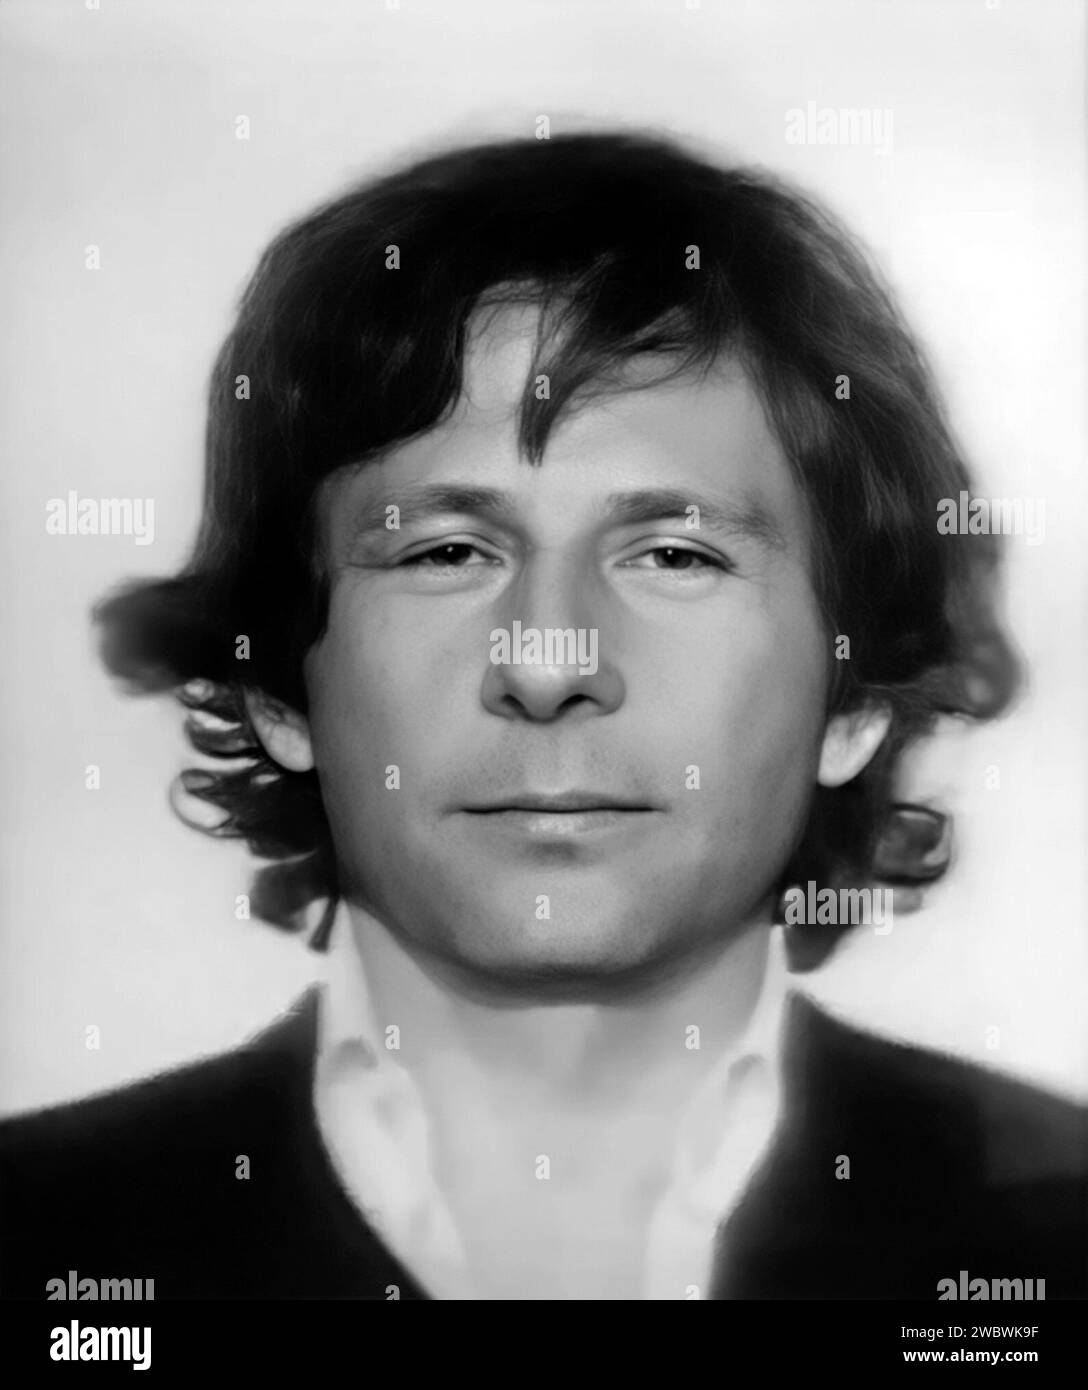 Roman Polanski. Polizeifoto des französischen und polnischen Filmregisseurs Raymond Roman Thierry Polański (né Liebling; 1933) nach seiner Verhaftung im Jahr 1977 Stockfoto